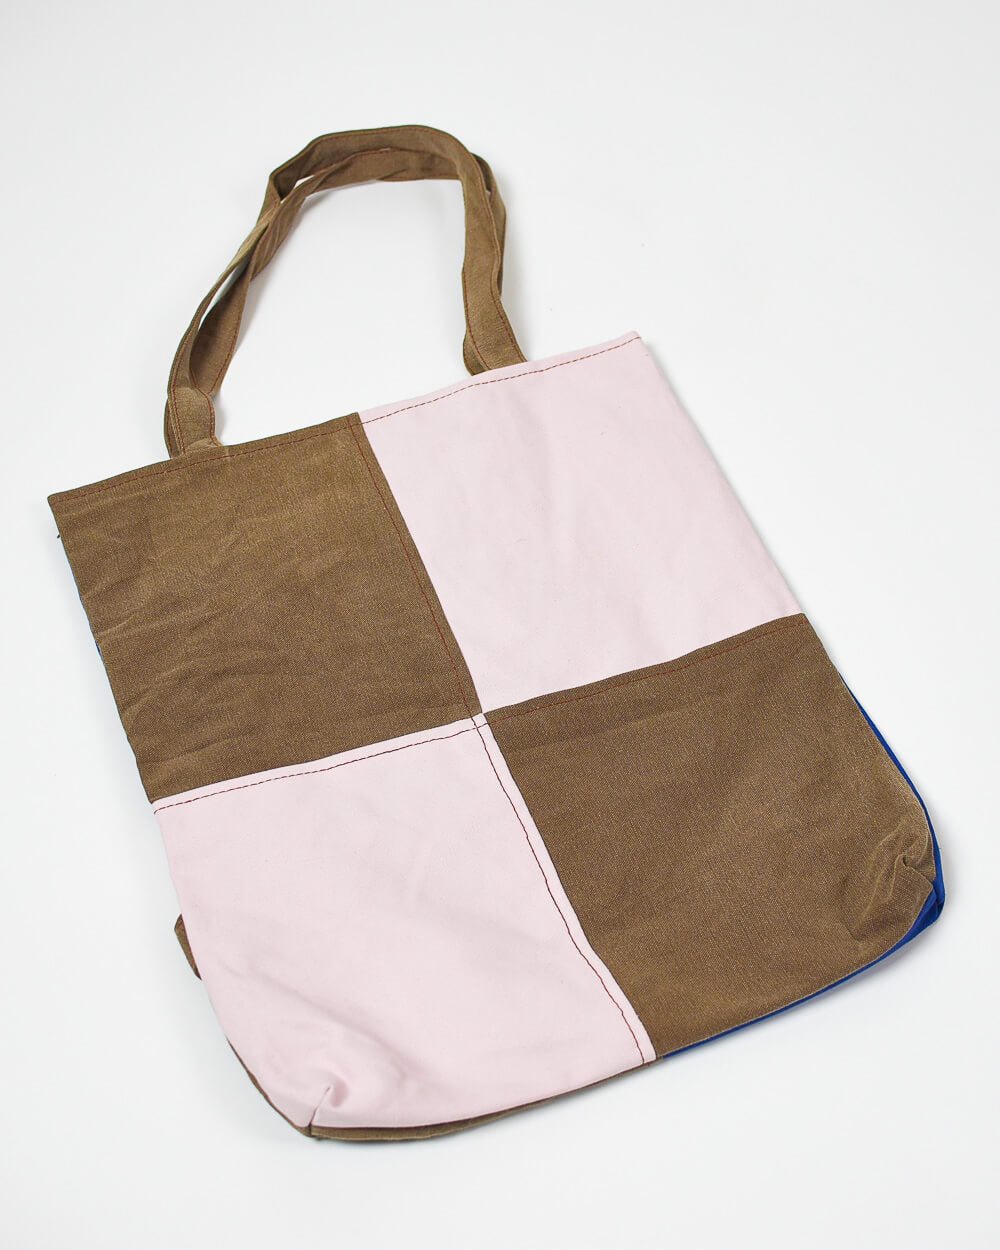 Dickies Reworked Tote Bag